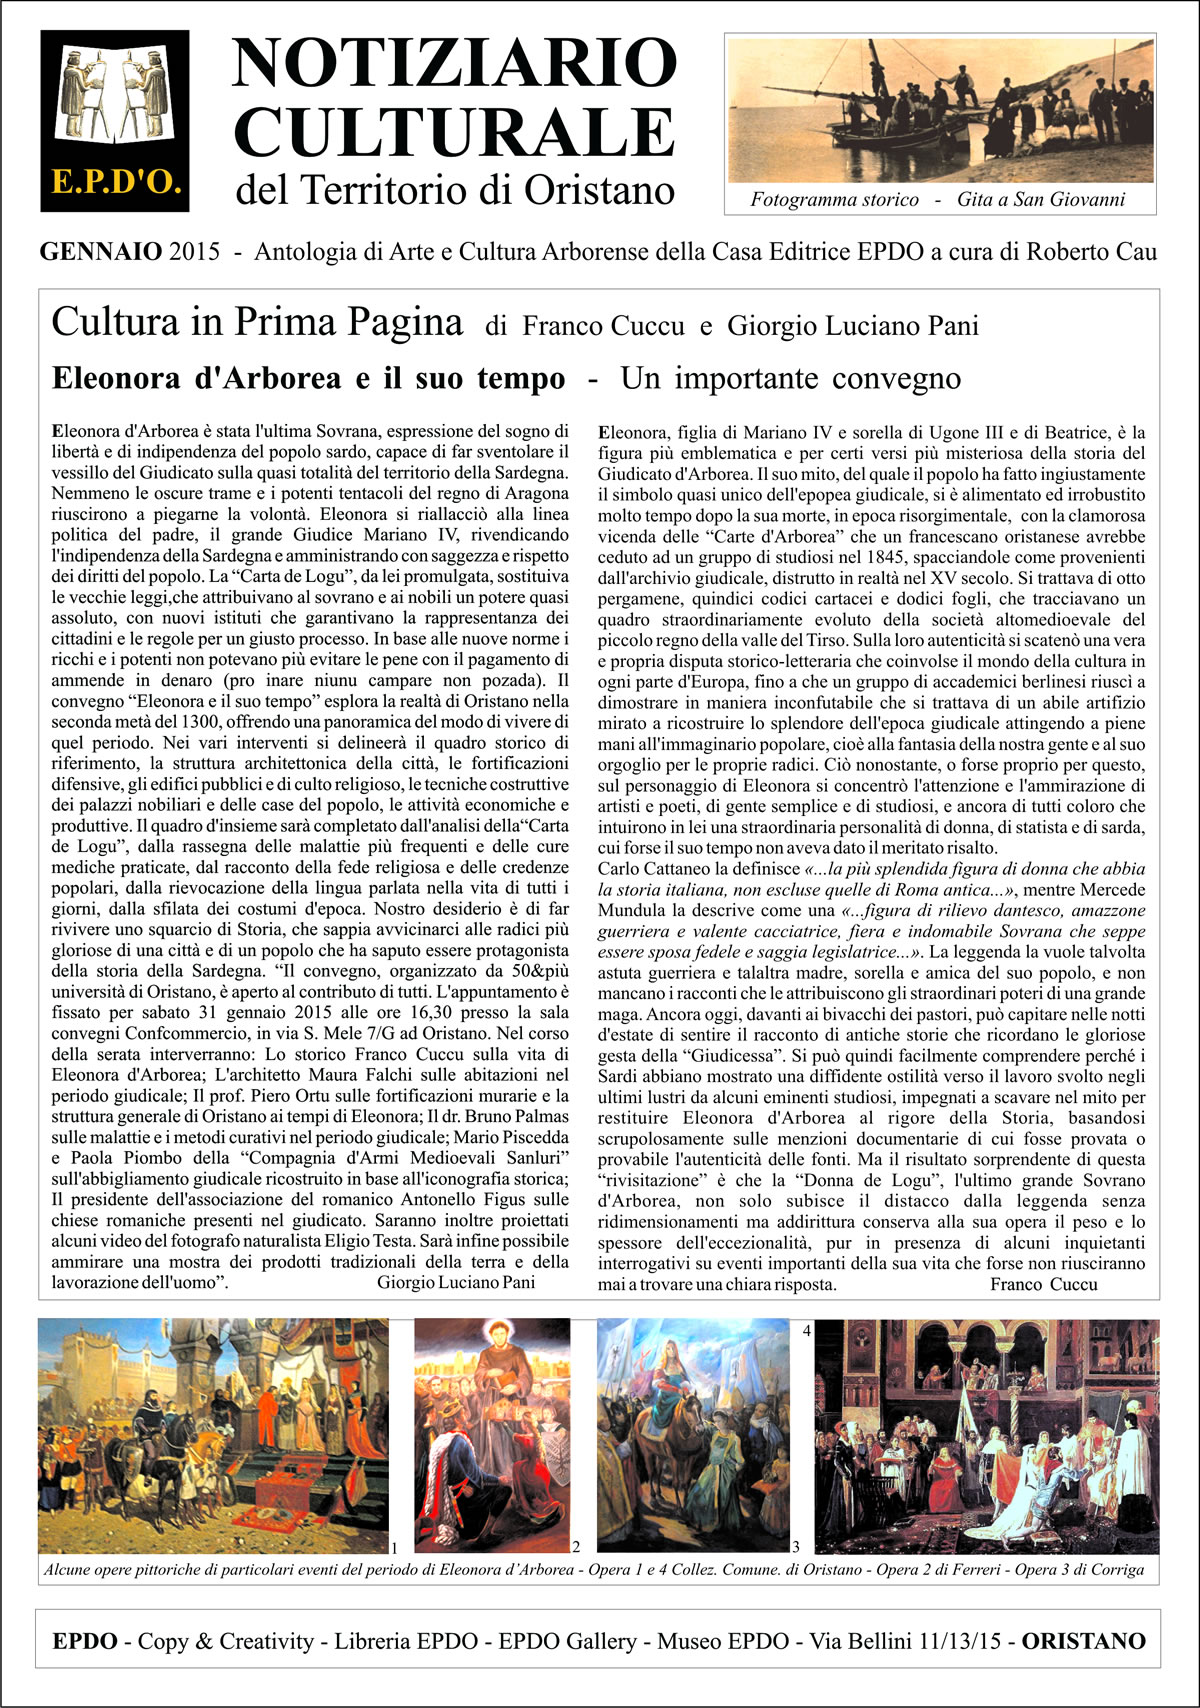 Notiziario Culturale EPDO - Oristano